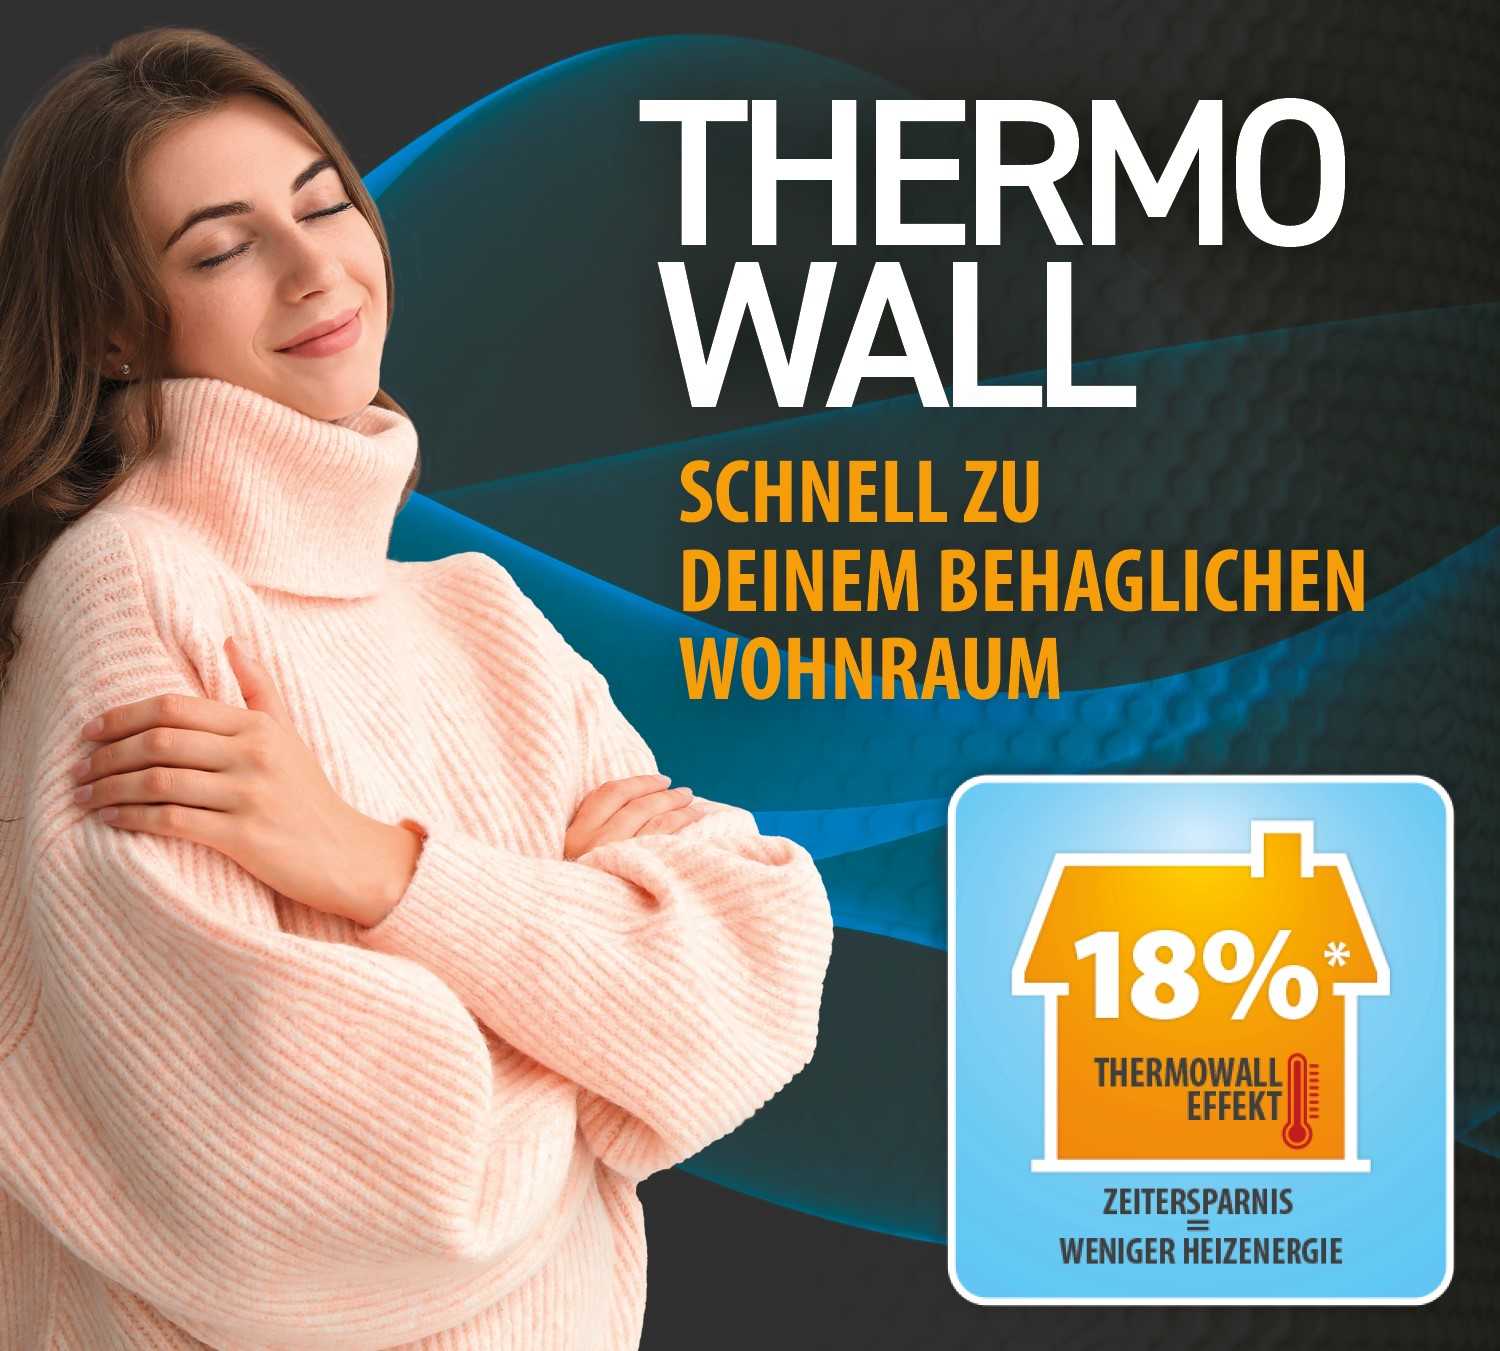             Papel pintado de ahorro energético Thermowall pintable y sobrepintable - 10,05 m x 0,53 m
        